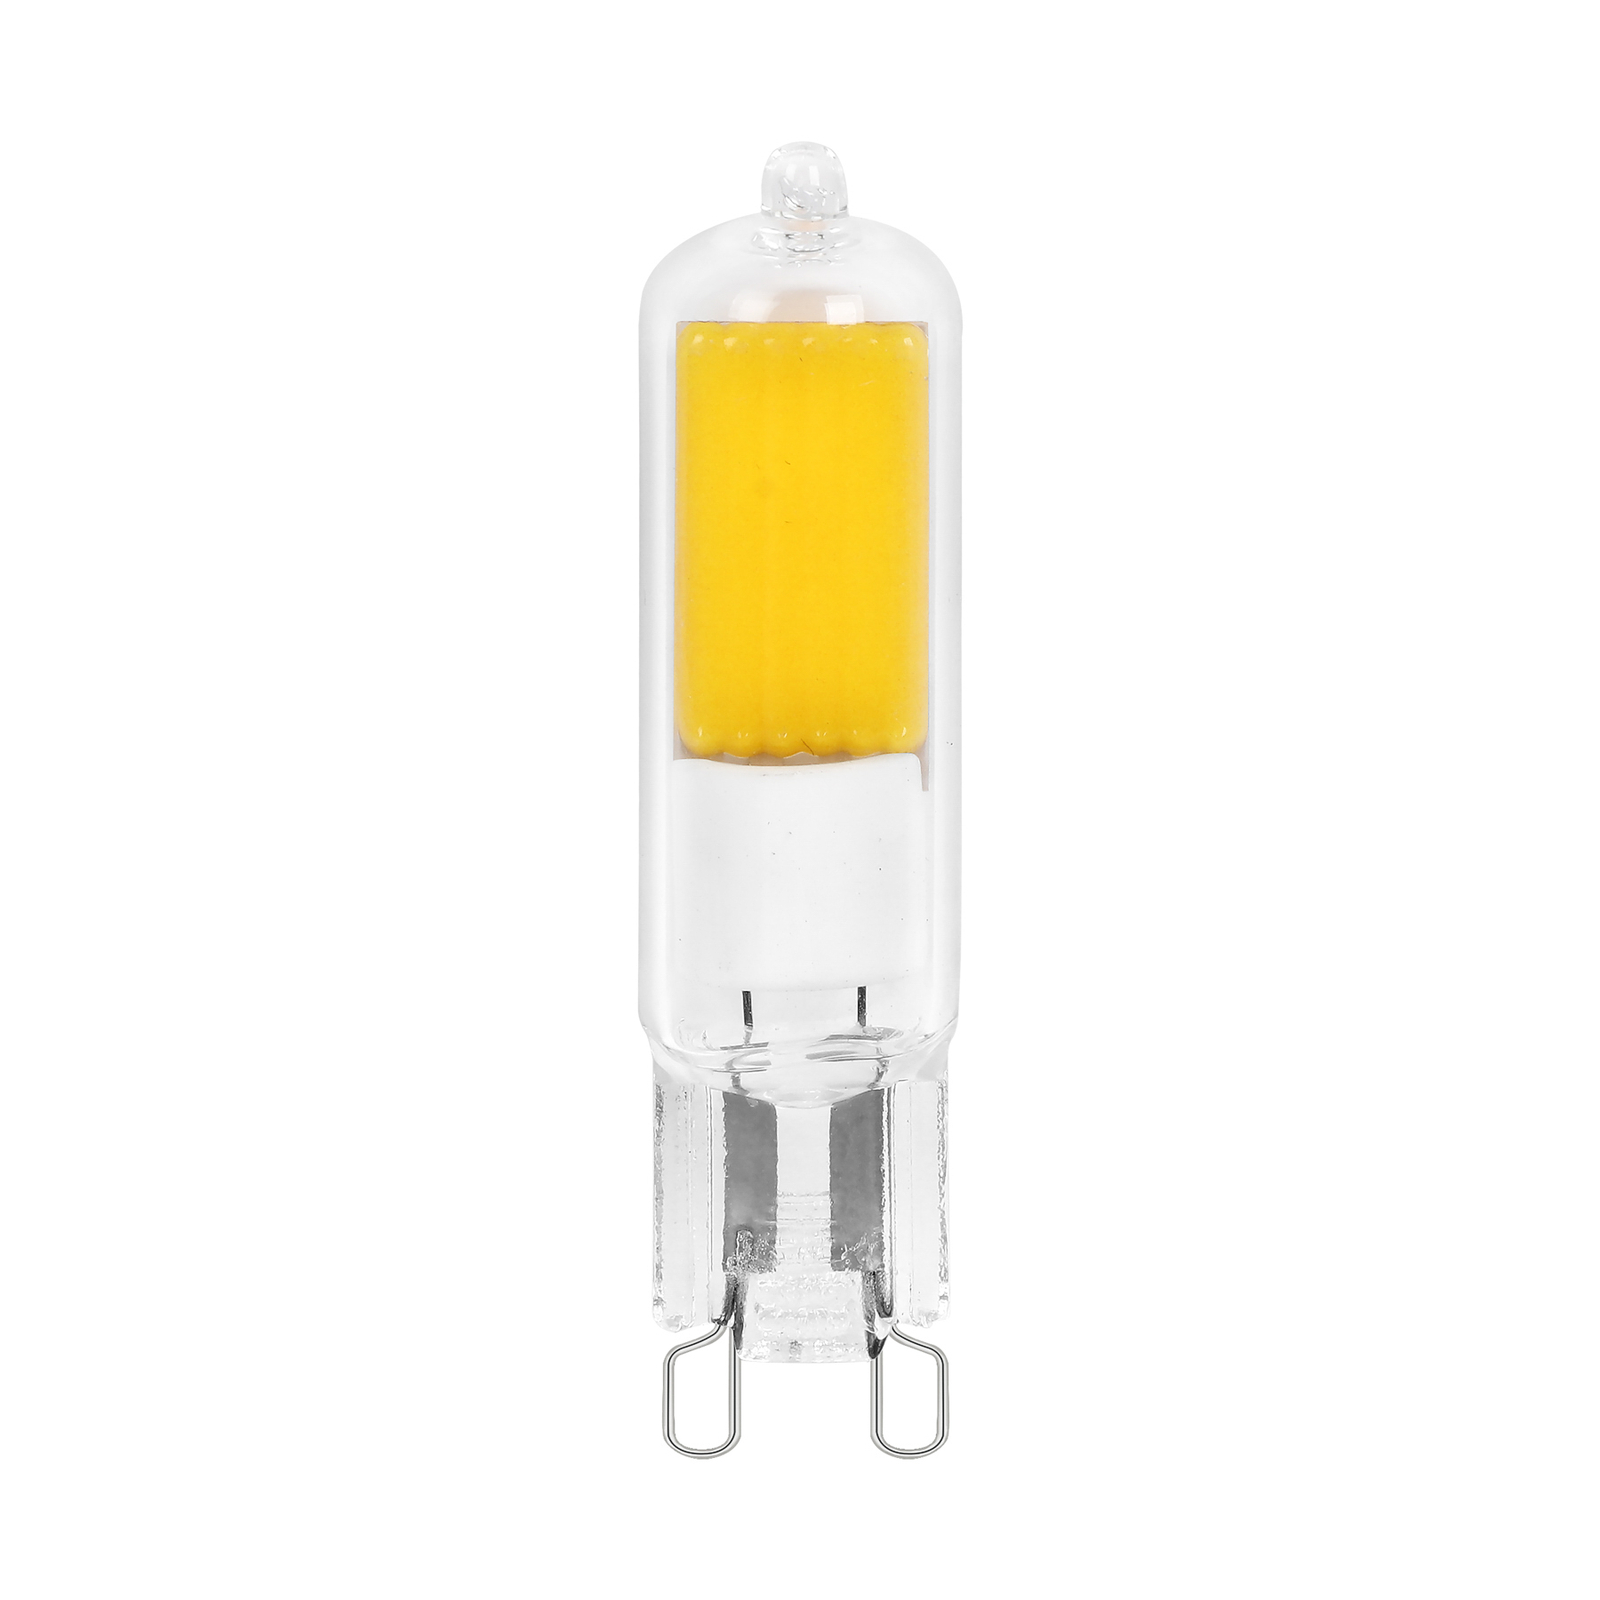 Arcchio bi-pin LED bulb, G9, 4W, 2700K, set of 2